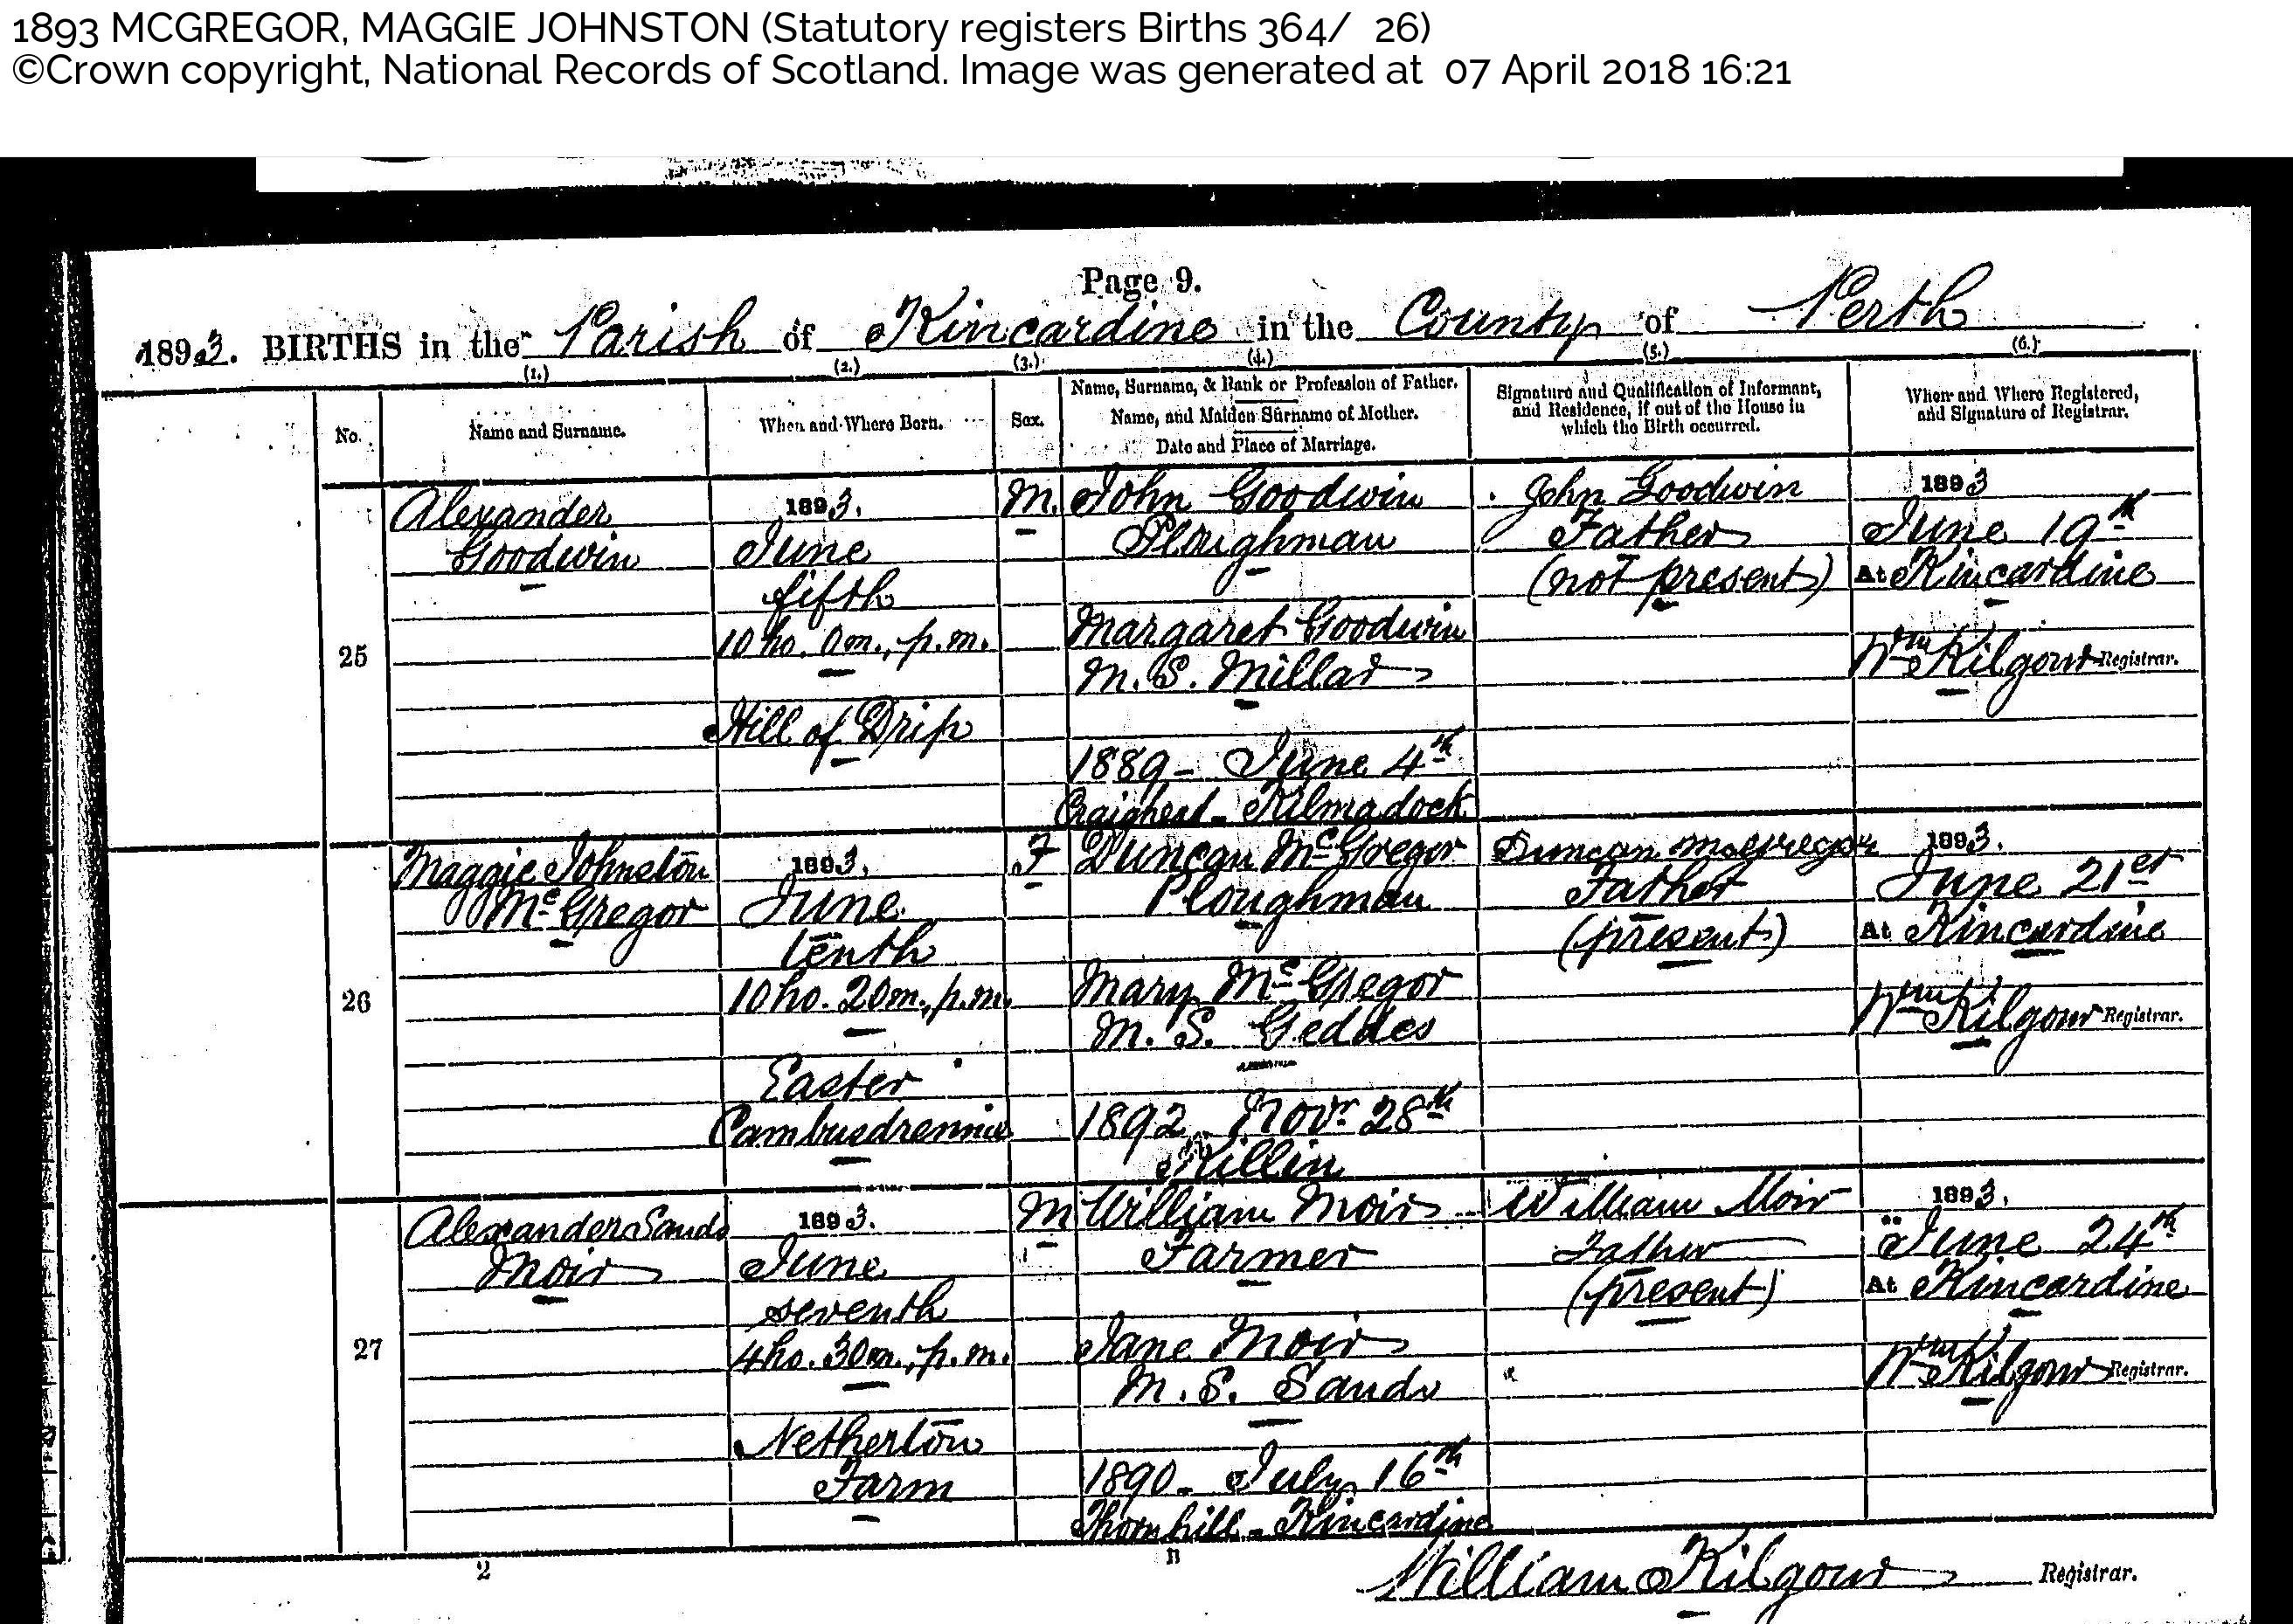 MaggieJohnstonMacgregor_B1893 Kincardine Perthshire, June 10, 1893